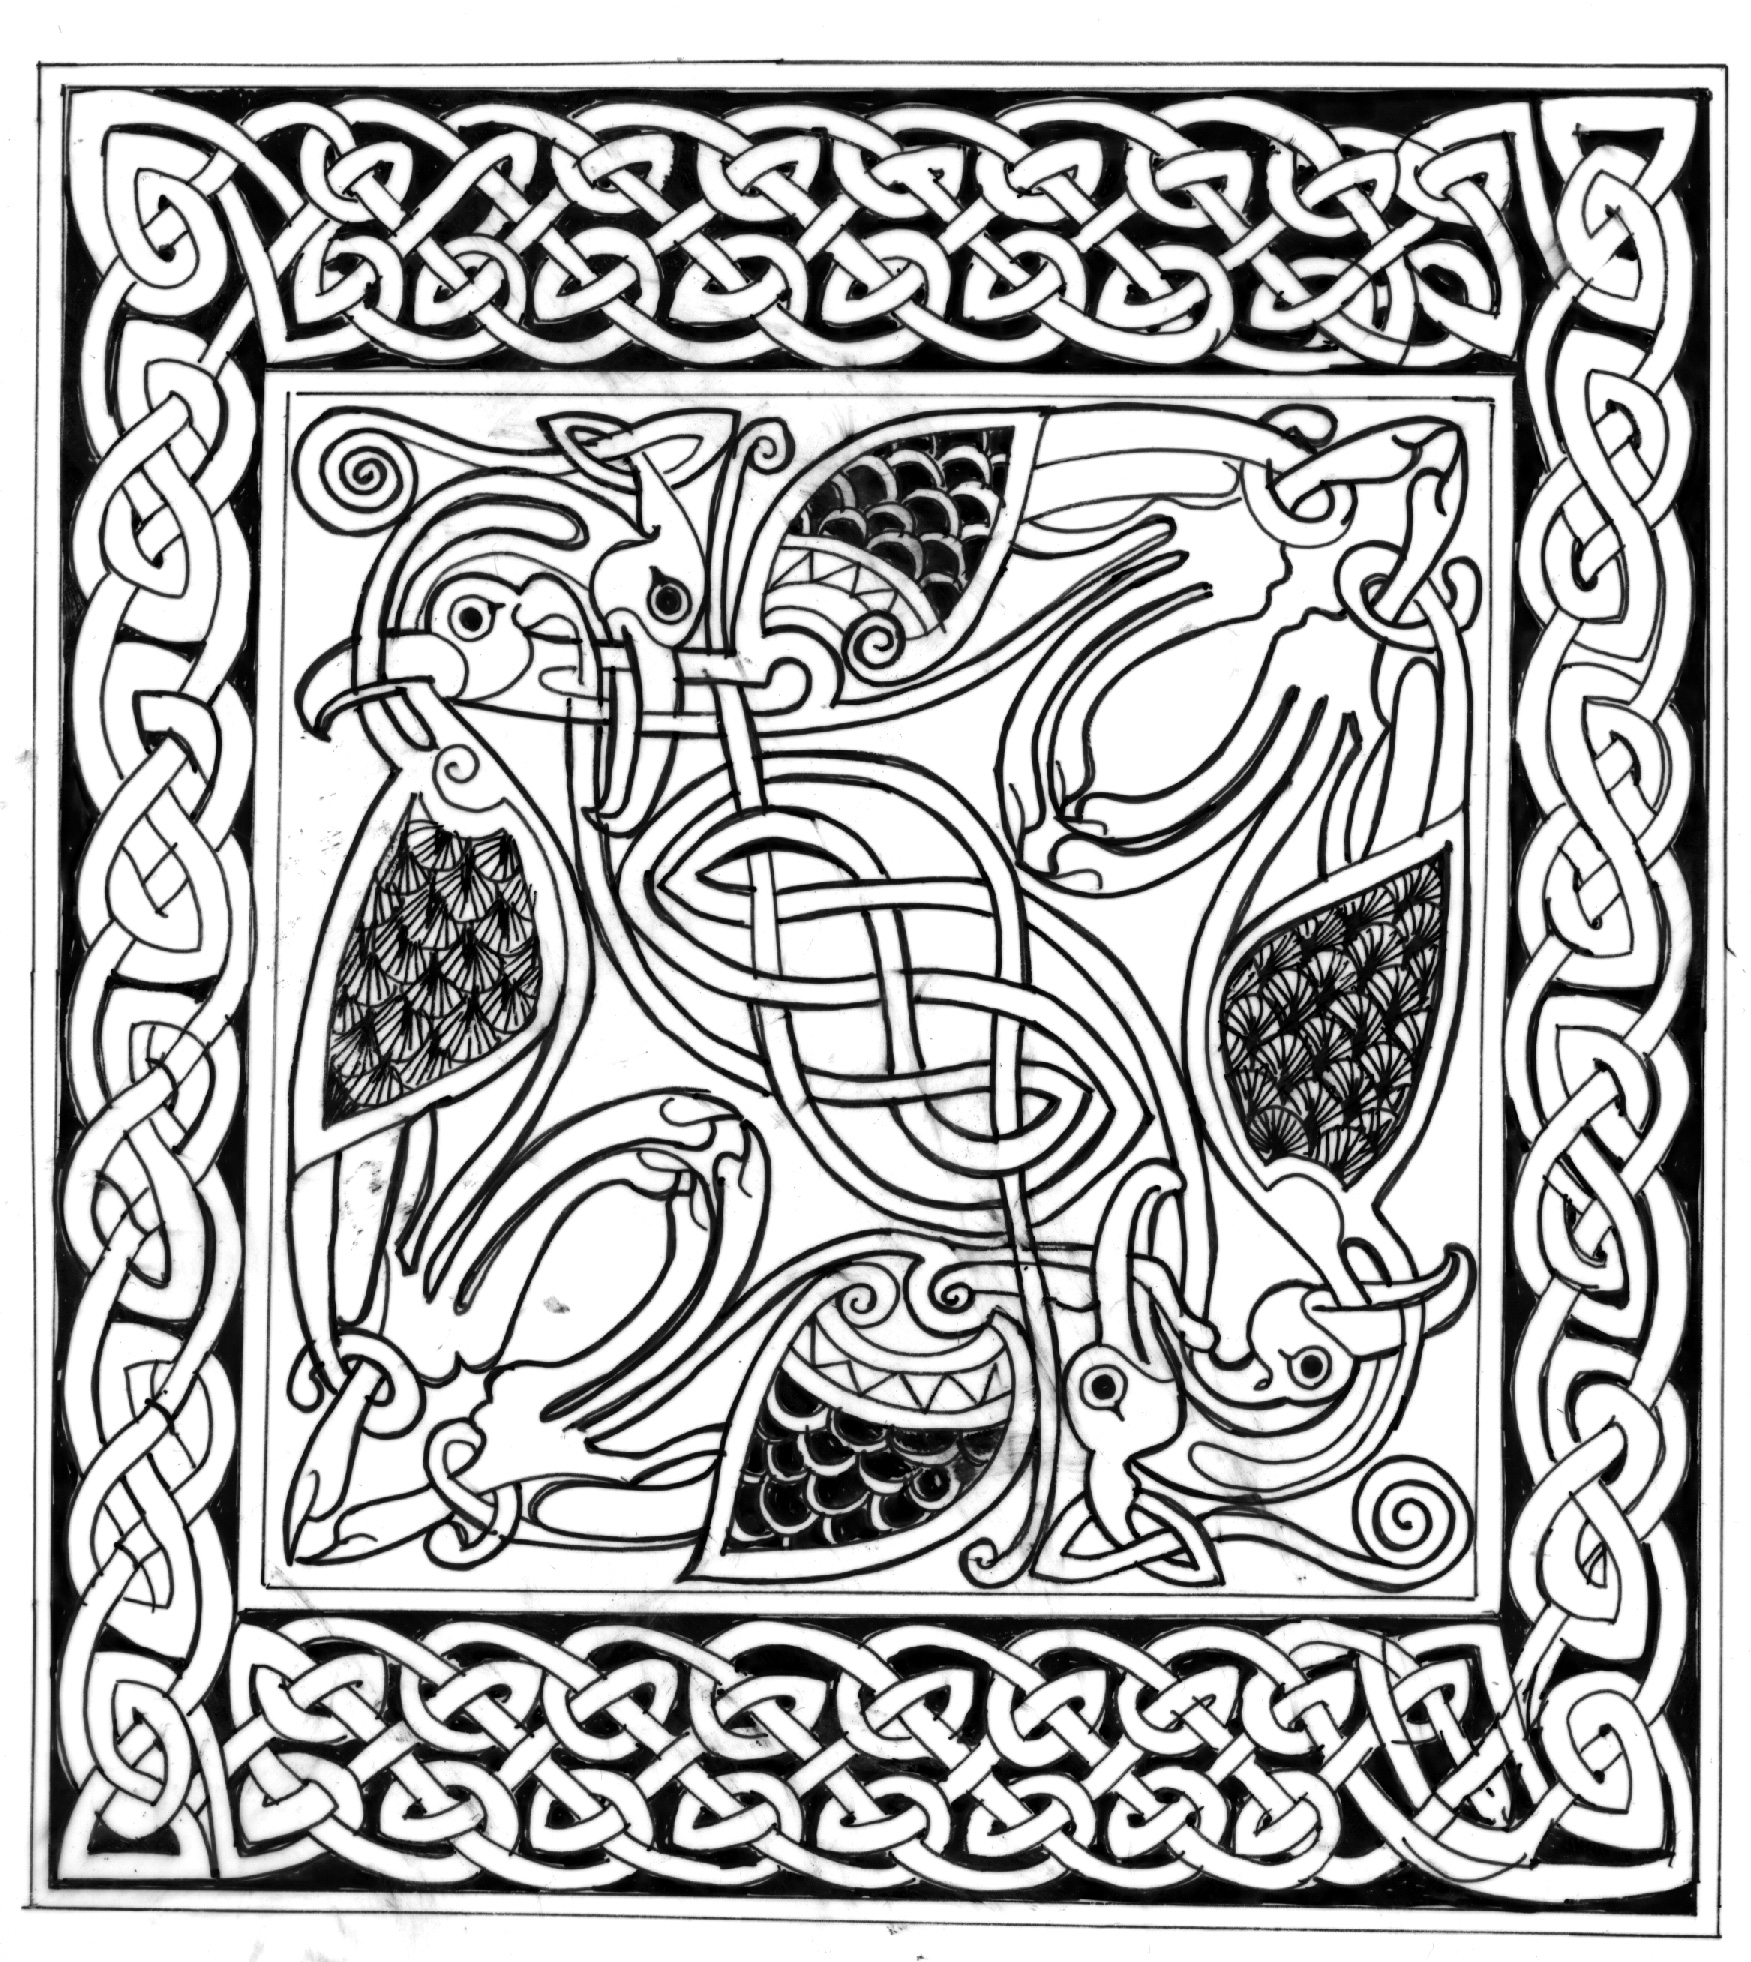 Kannen kuvassa on lintuaiheinen 
druidi-ornamentti. Druidi-symboliikassa toistuvat
päättymättämät solmukuvioinnit, myös linnut ovat hyvin yleinen käytetty symboli.